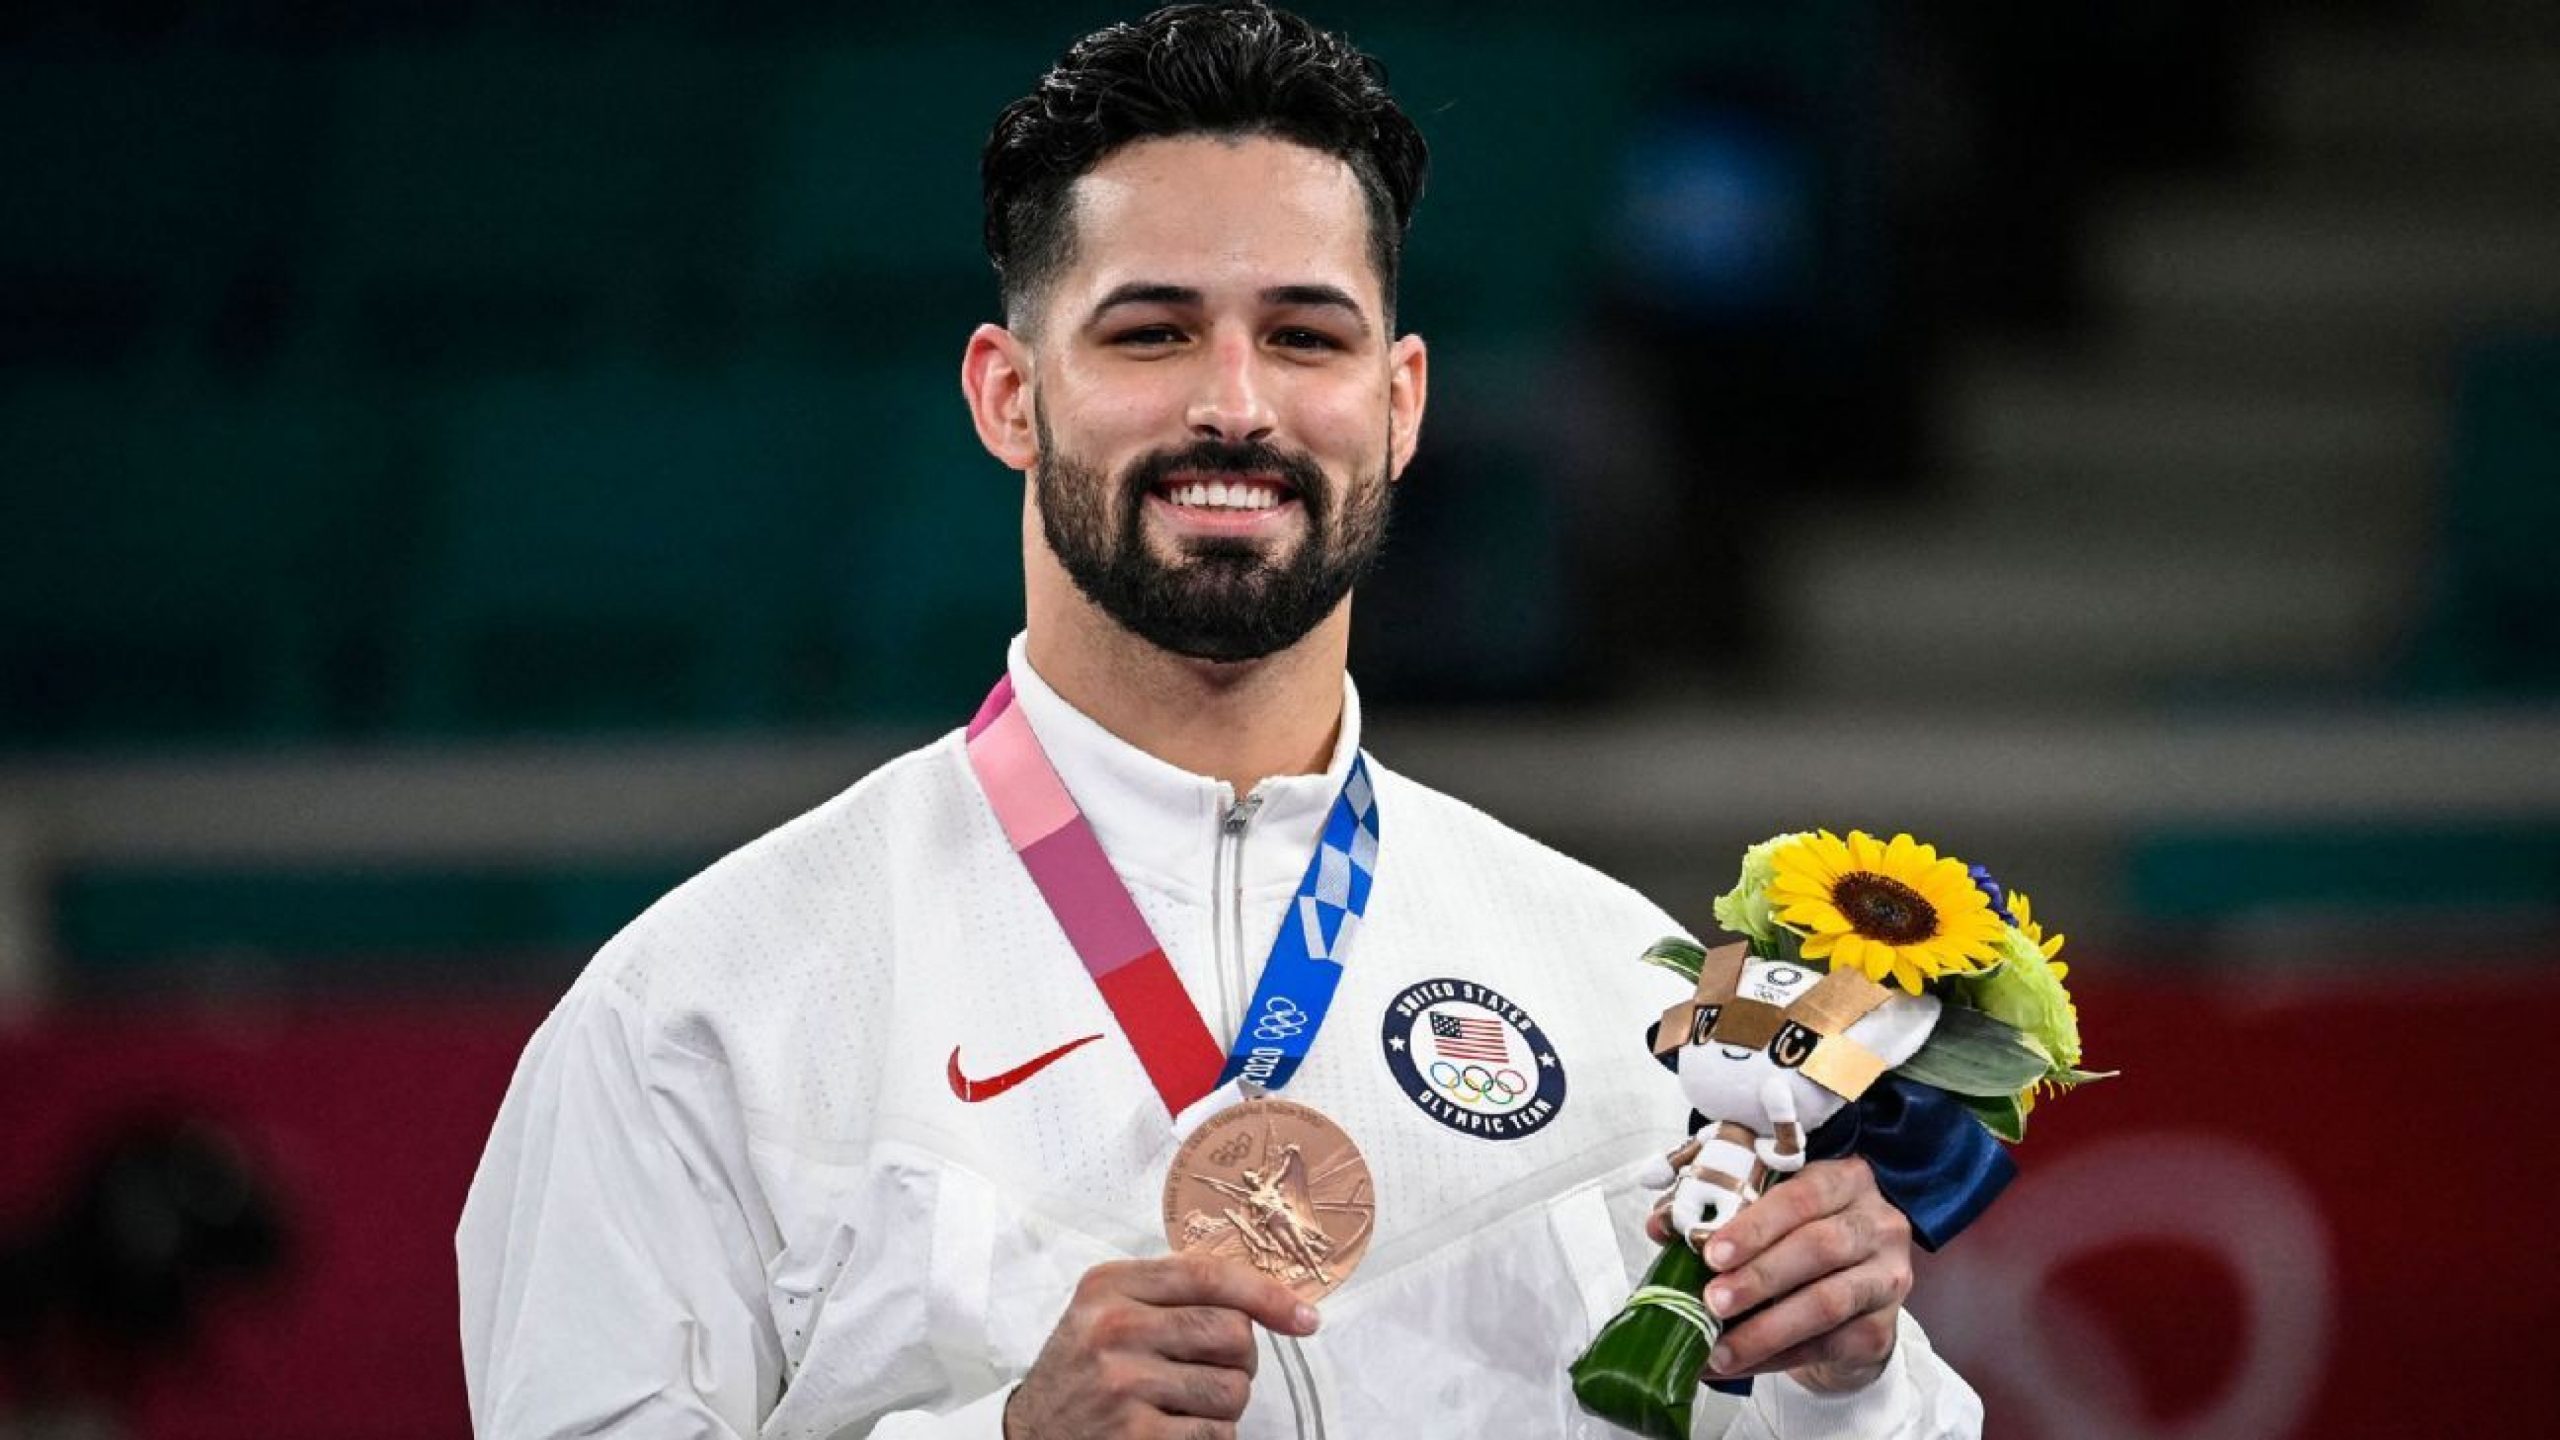 Torres wins first-ever karate medal for U.S.